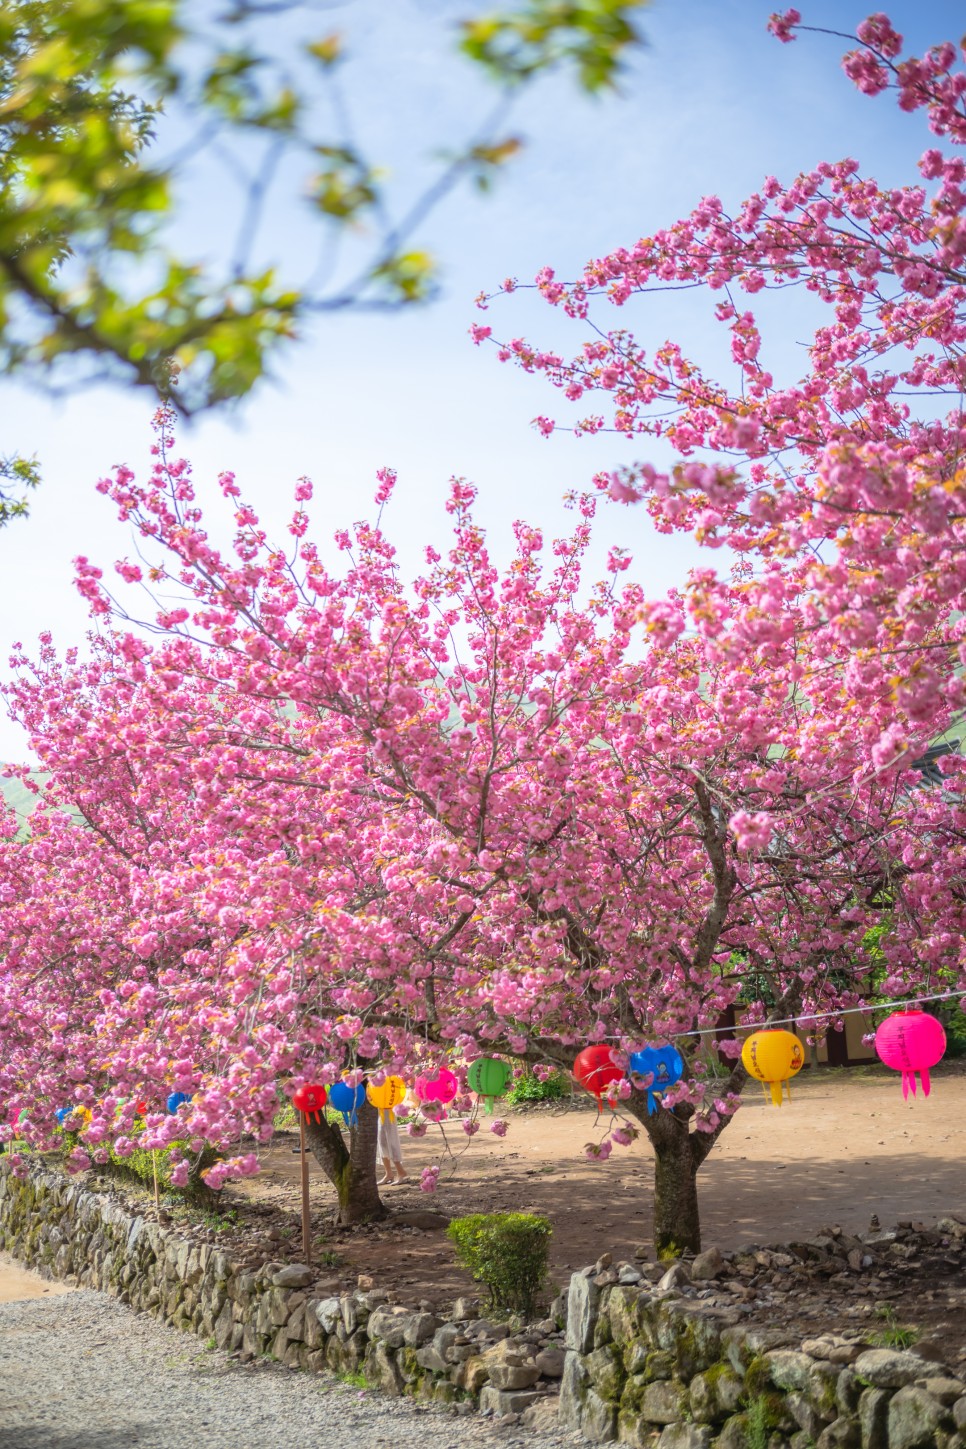 순천 선암사 겹벚꽃 명소 4월 17일 만개 상태 주말 여행 가기 좋은 곳